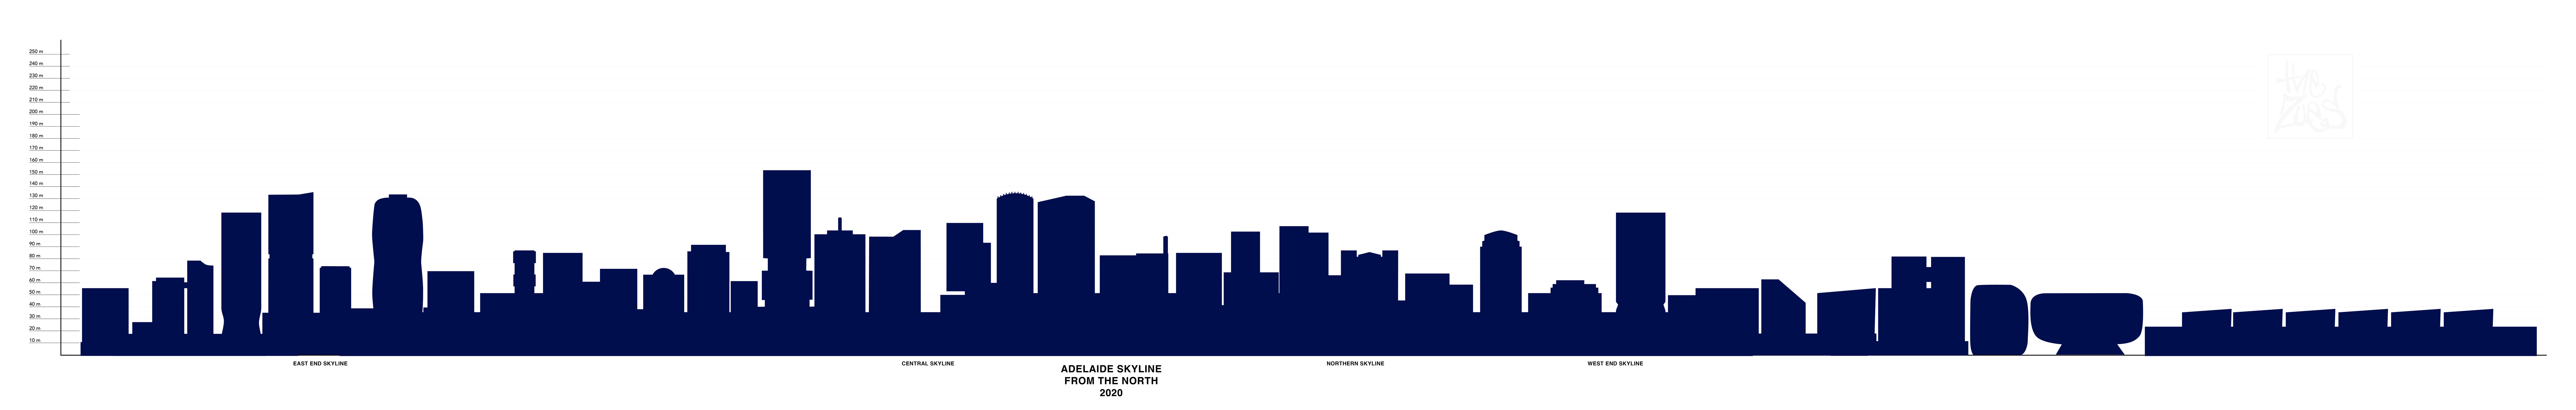 Adelaide Skyline 2020 Diagram v8.jpg